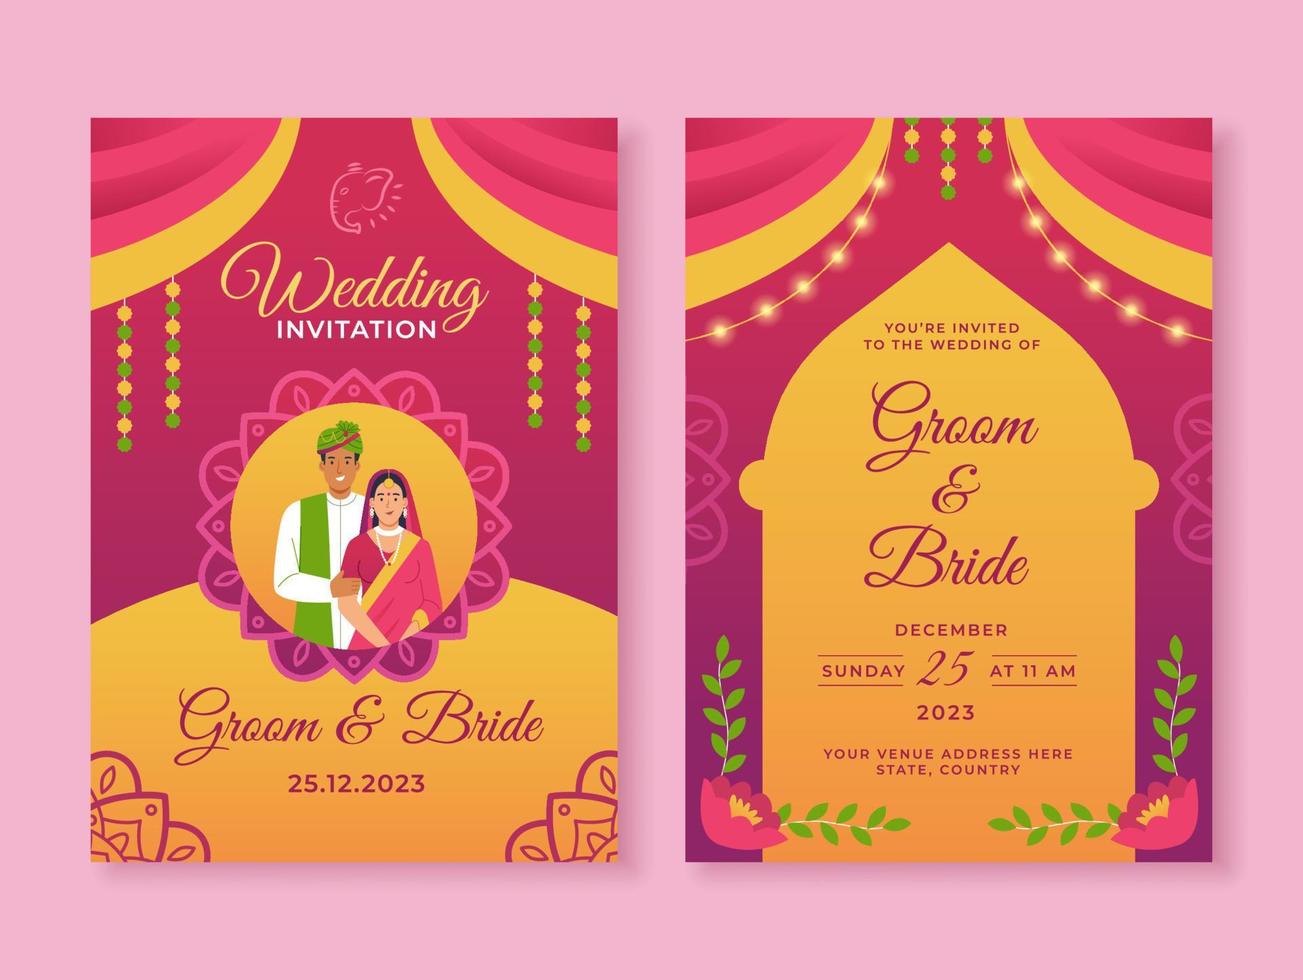 Indiase bruiloft uitnodiging sjabloon vector